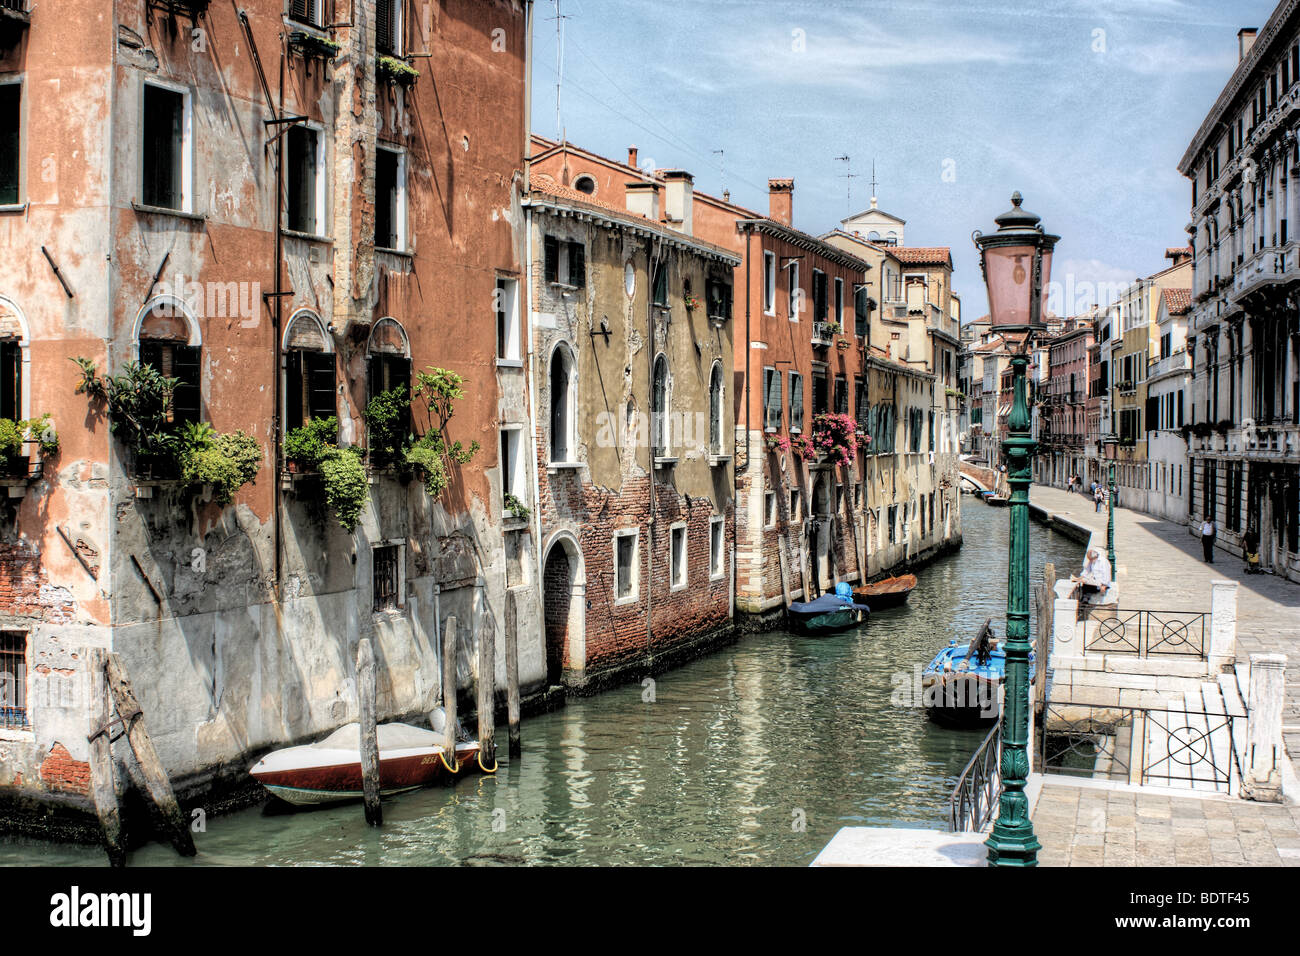 Le Rio della Misericordia, quartier de Cannaregio de Venise, Italie (HDR - High Dynamic Range image) Banque D'Images